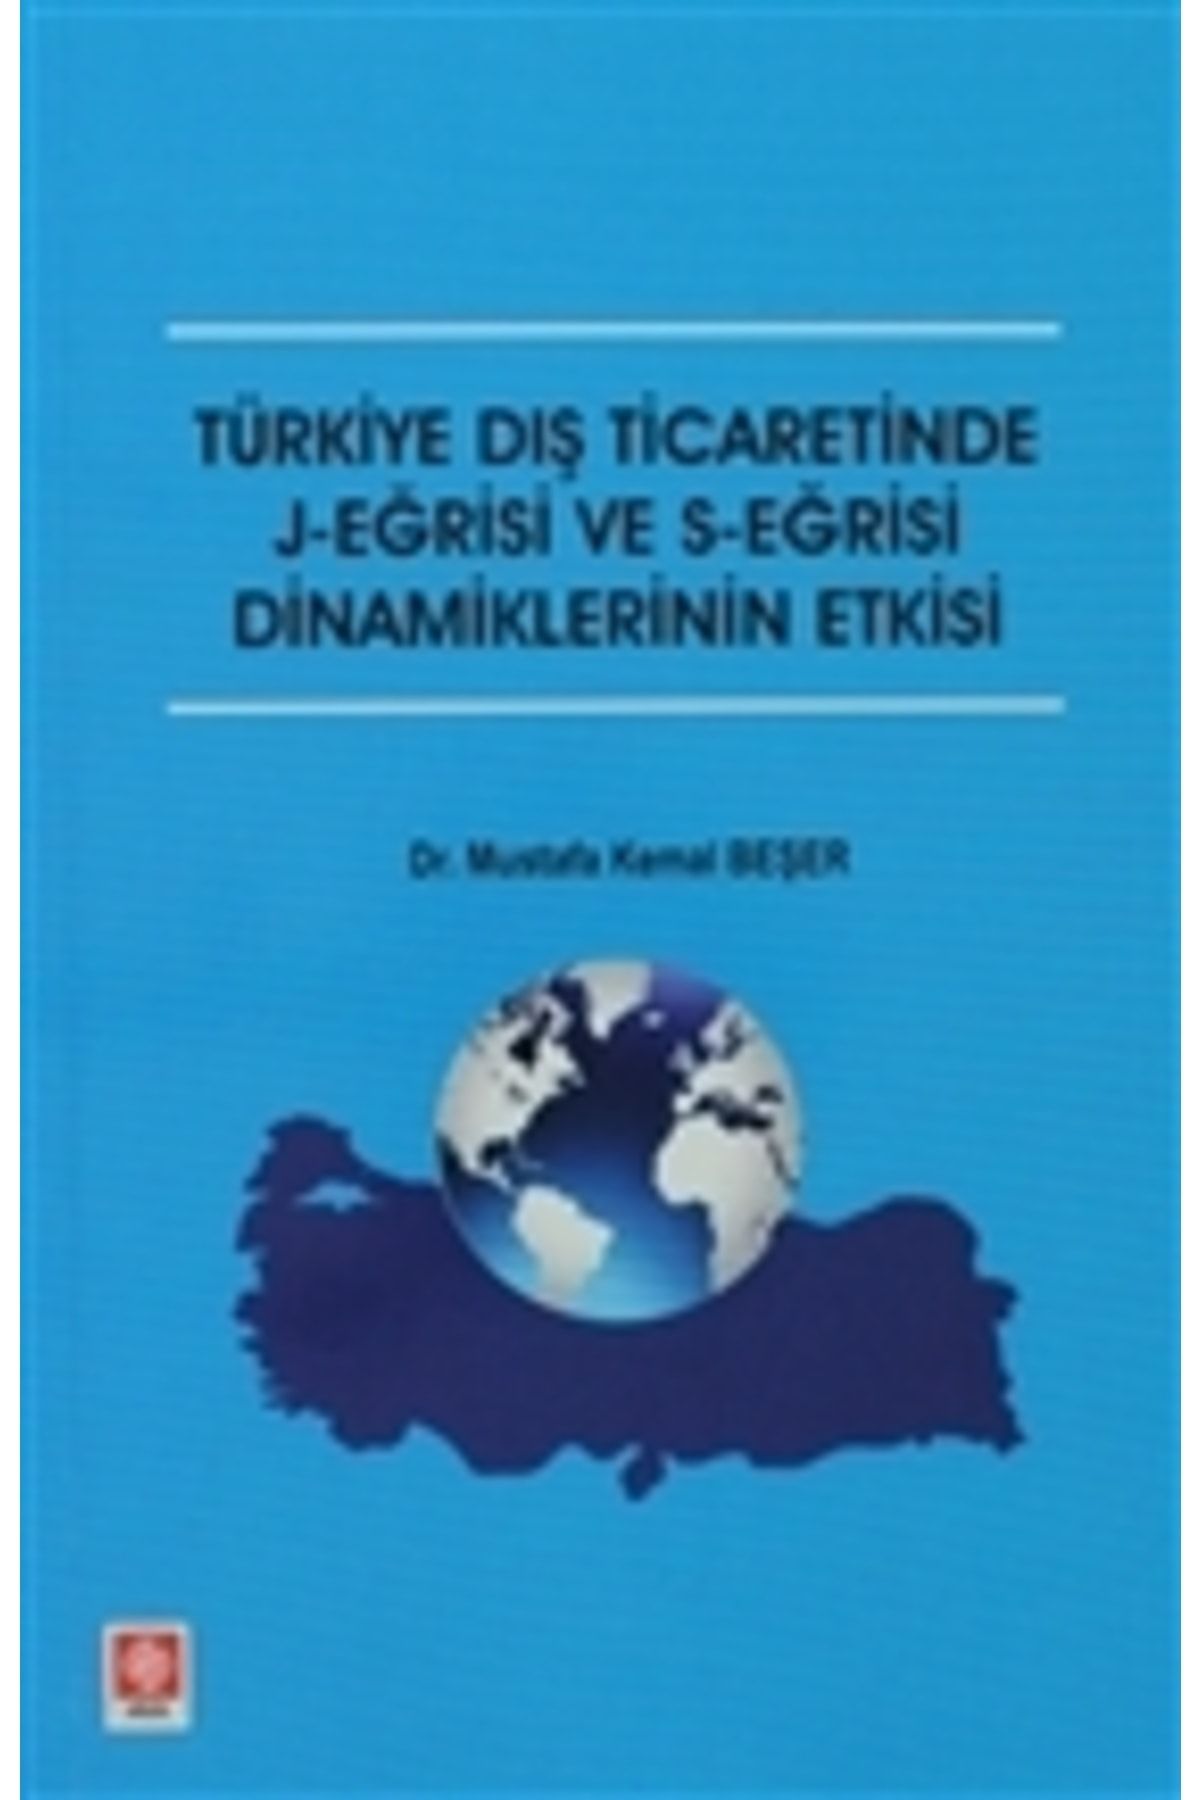 Ekin Basım Yayın Türkiye Dış Ticaretinde J-eğrisi Ve S-eğrisi Dinamiklerinin Etkisi